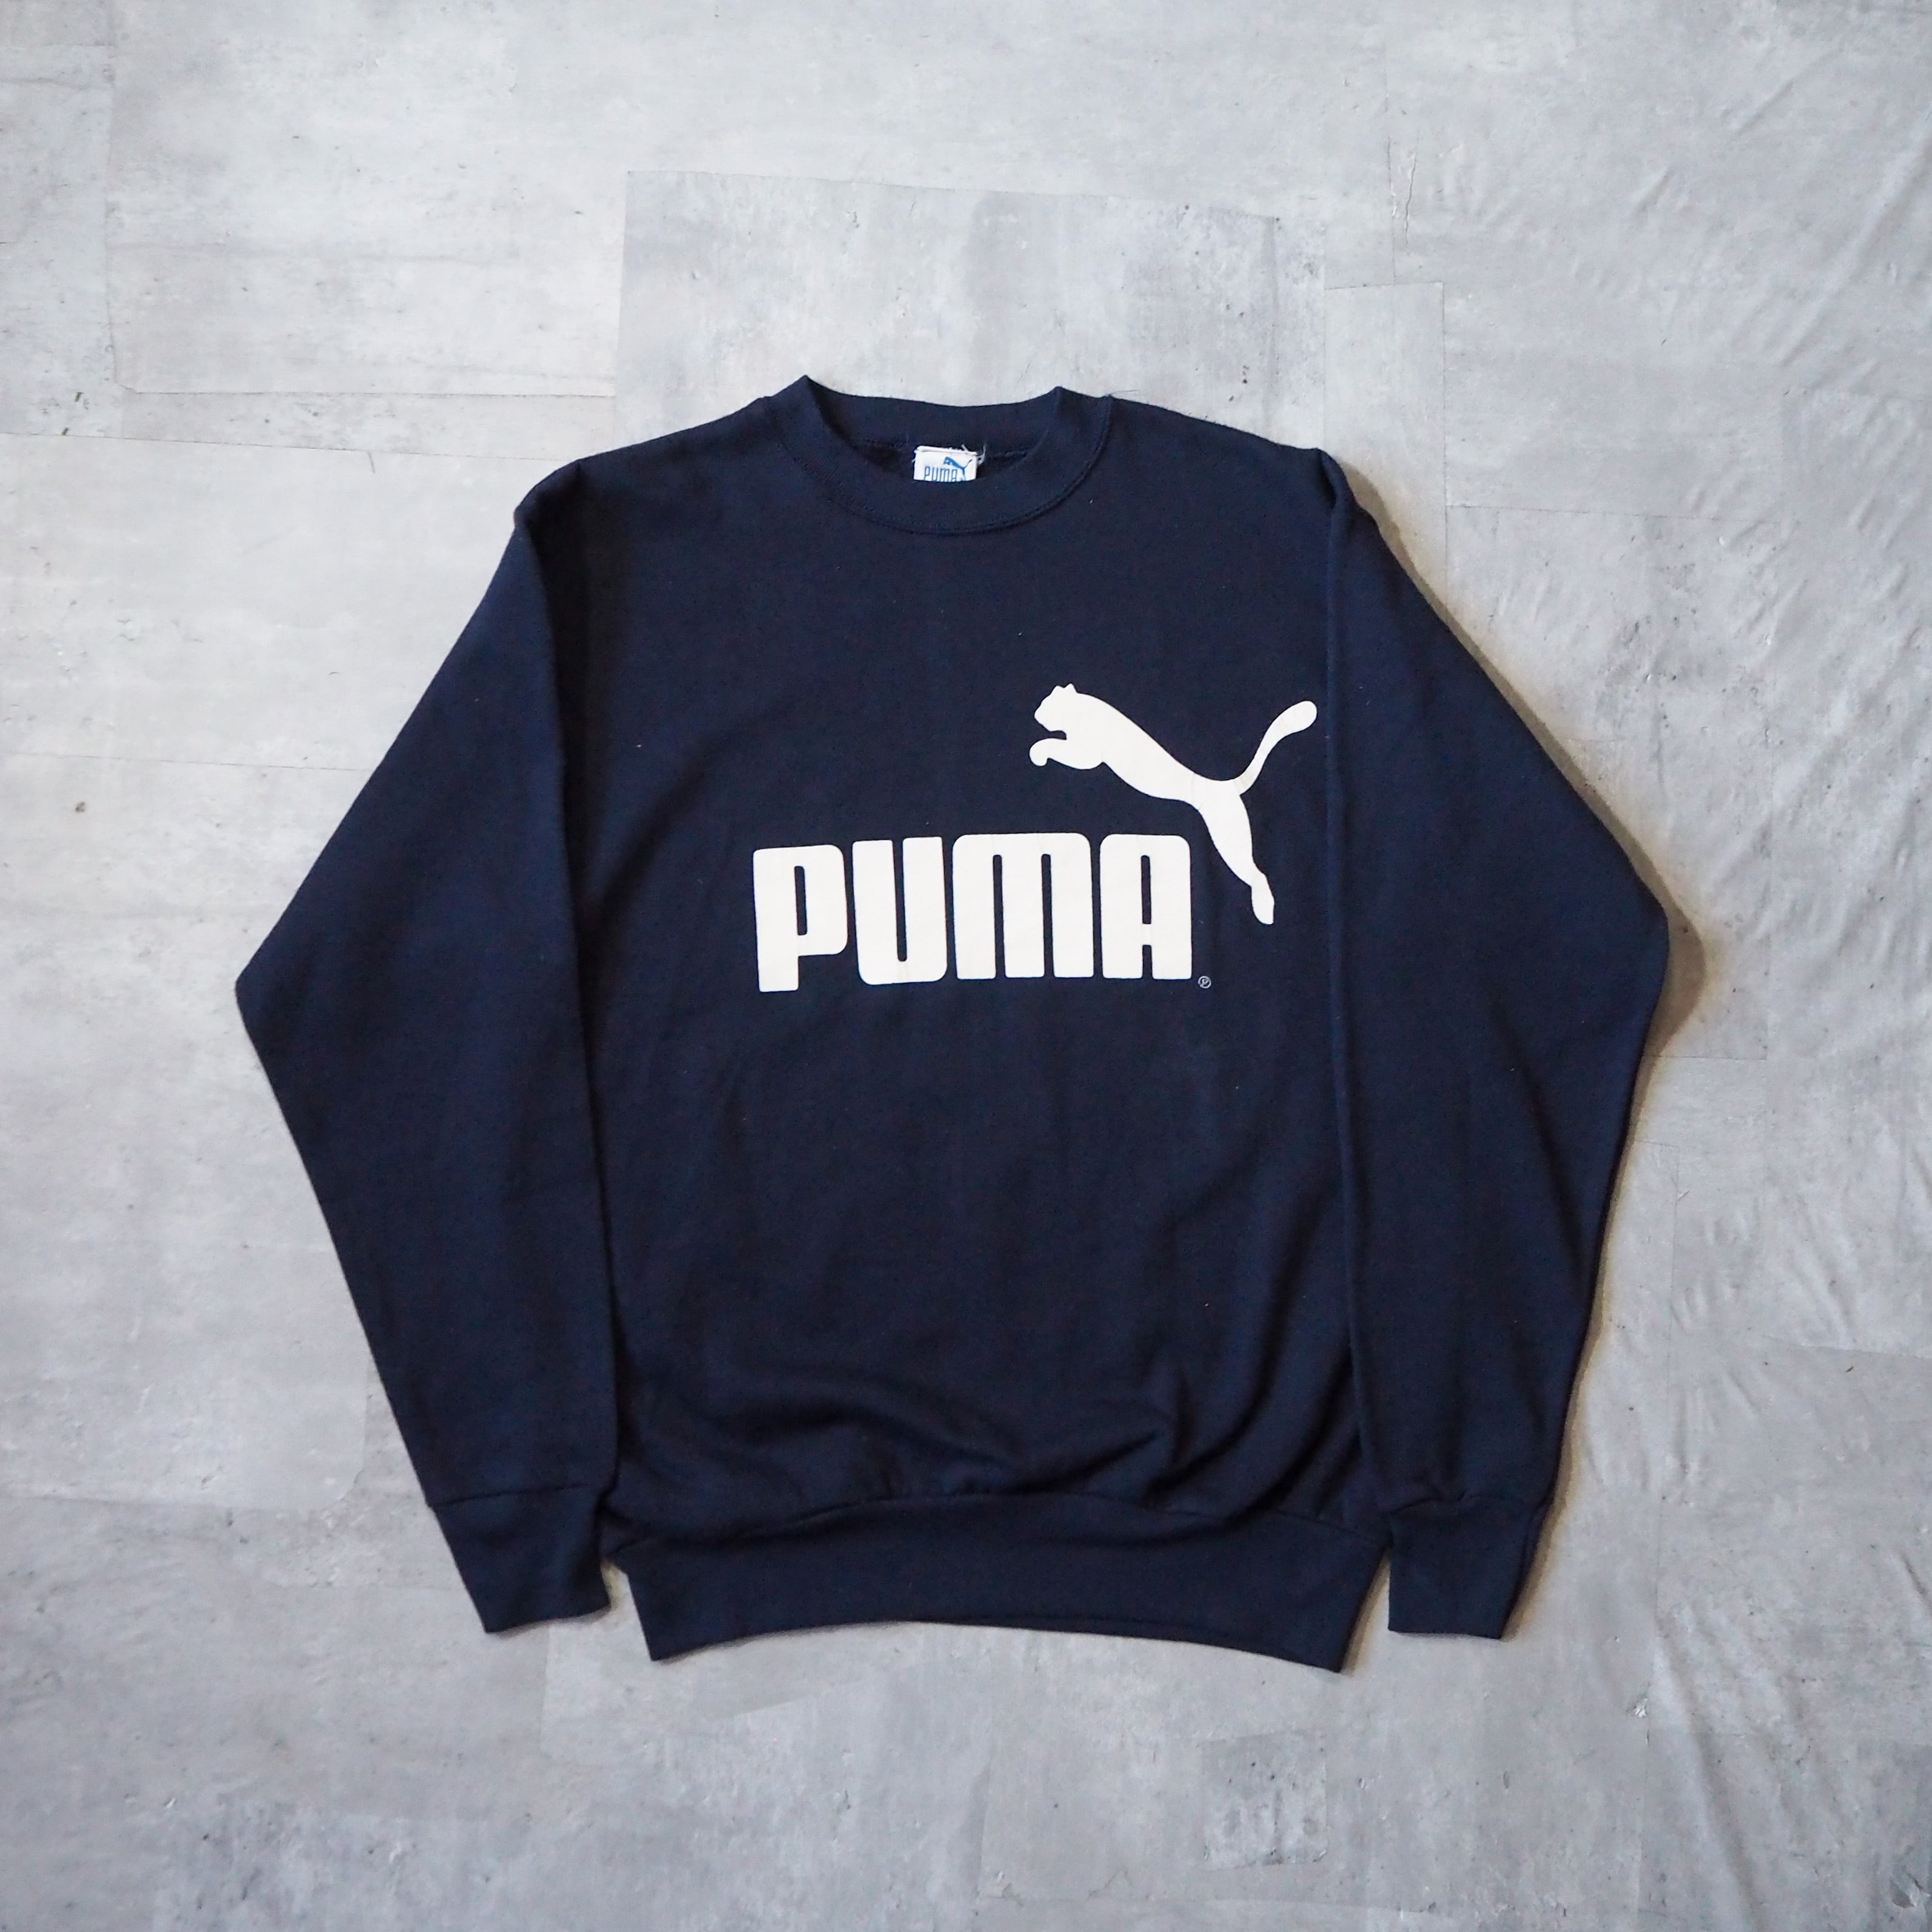 80s-90s “PUMA” logo dark navy sweat shirt made in USA 80年代 90年代 プーマ ロゴ  スウェット ネイビー usa製 丸胴